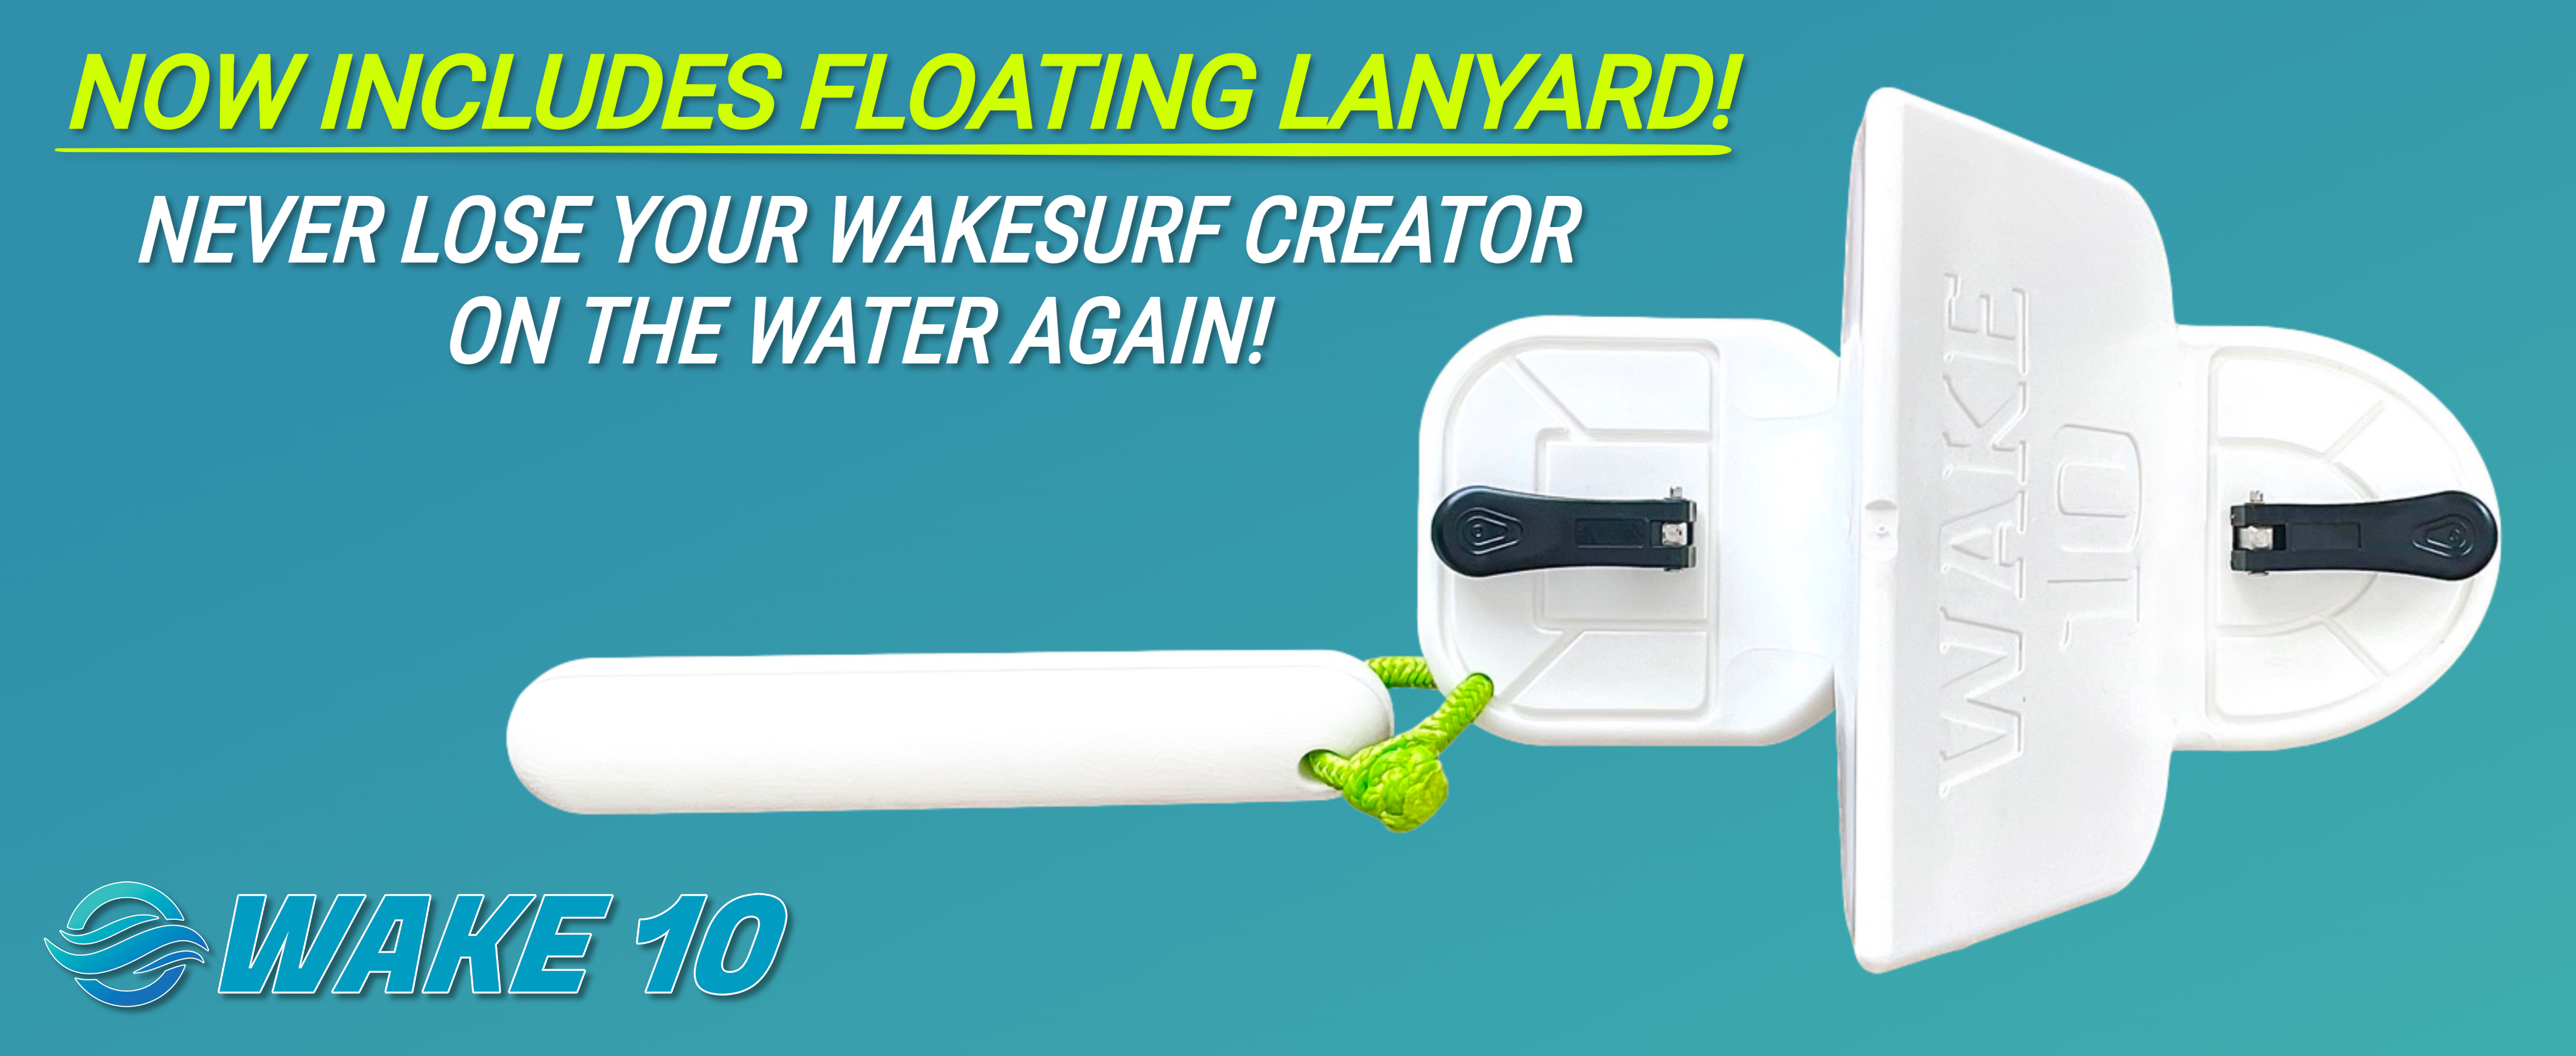 Wake shape creator with floating lanyard